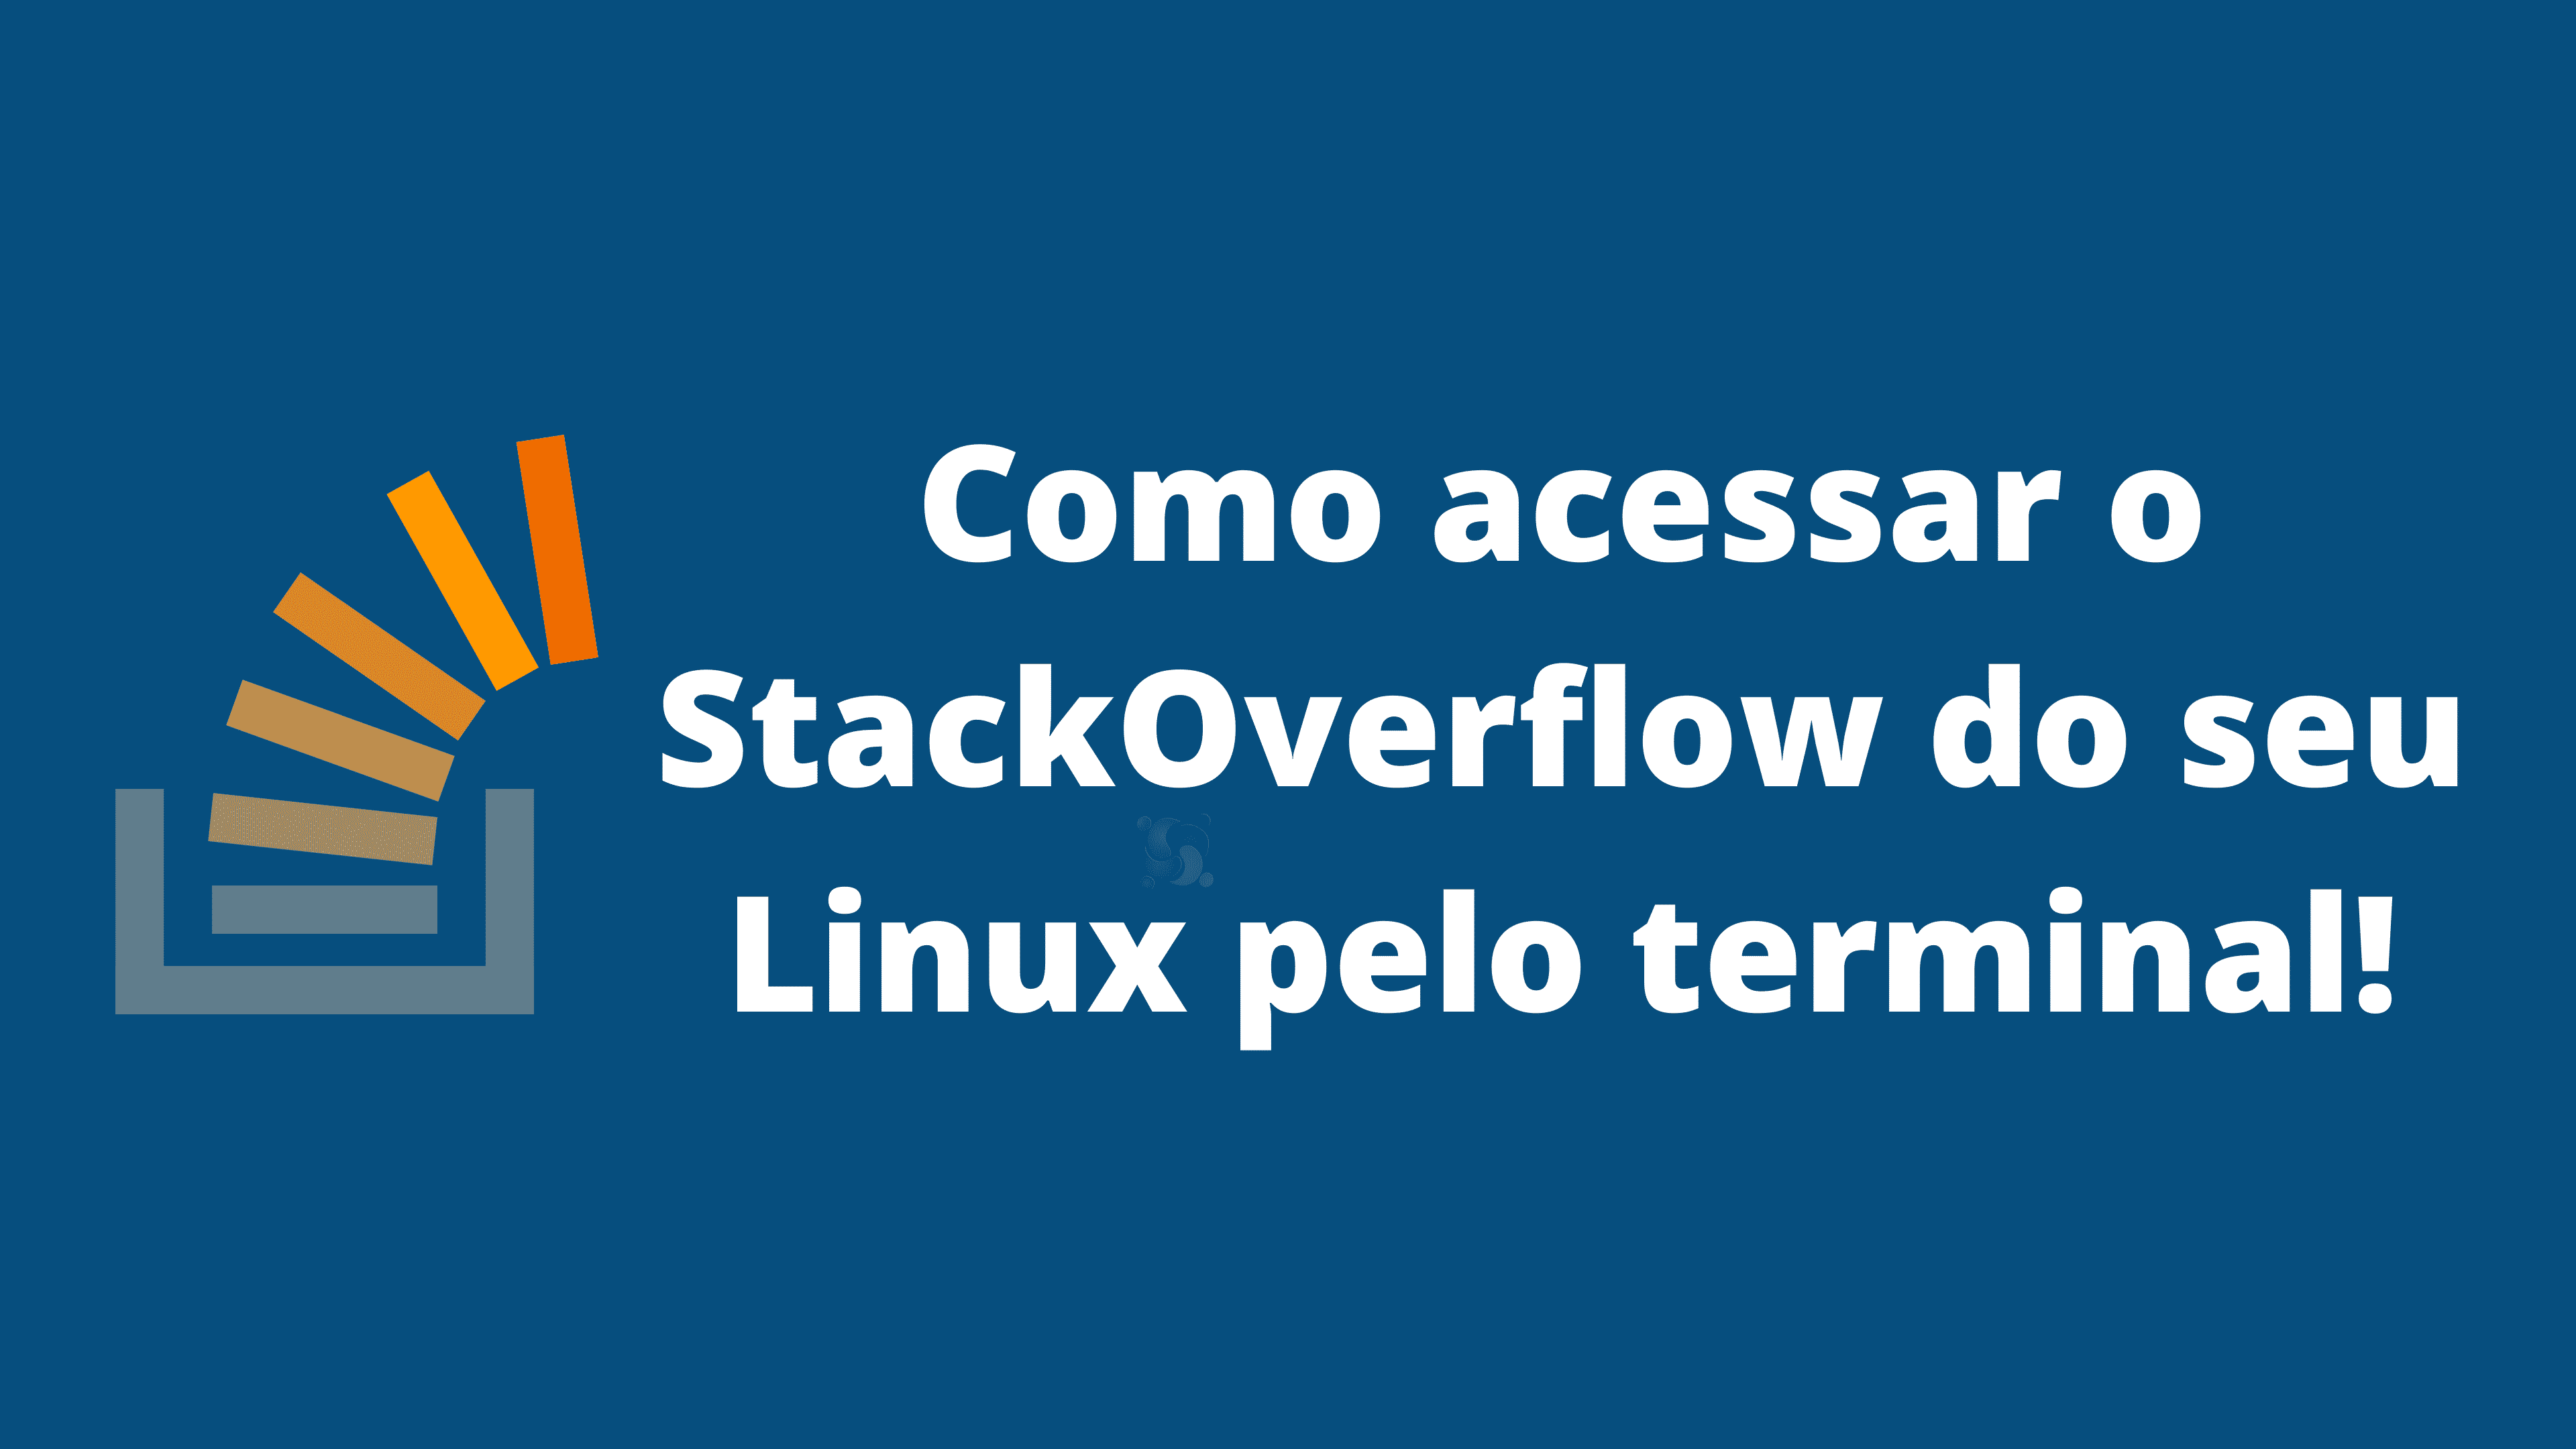 como-acessar-o-stackoverflow-do-seu-linux-pelo-terminal